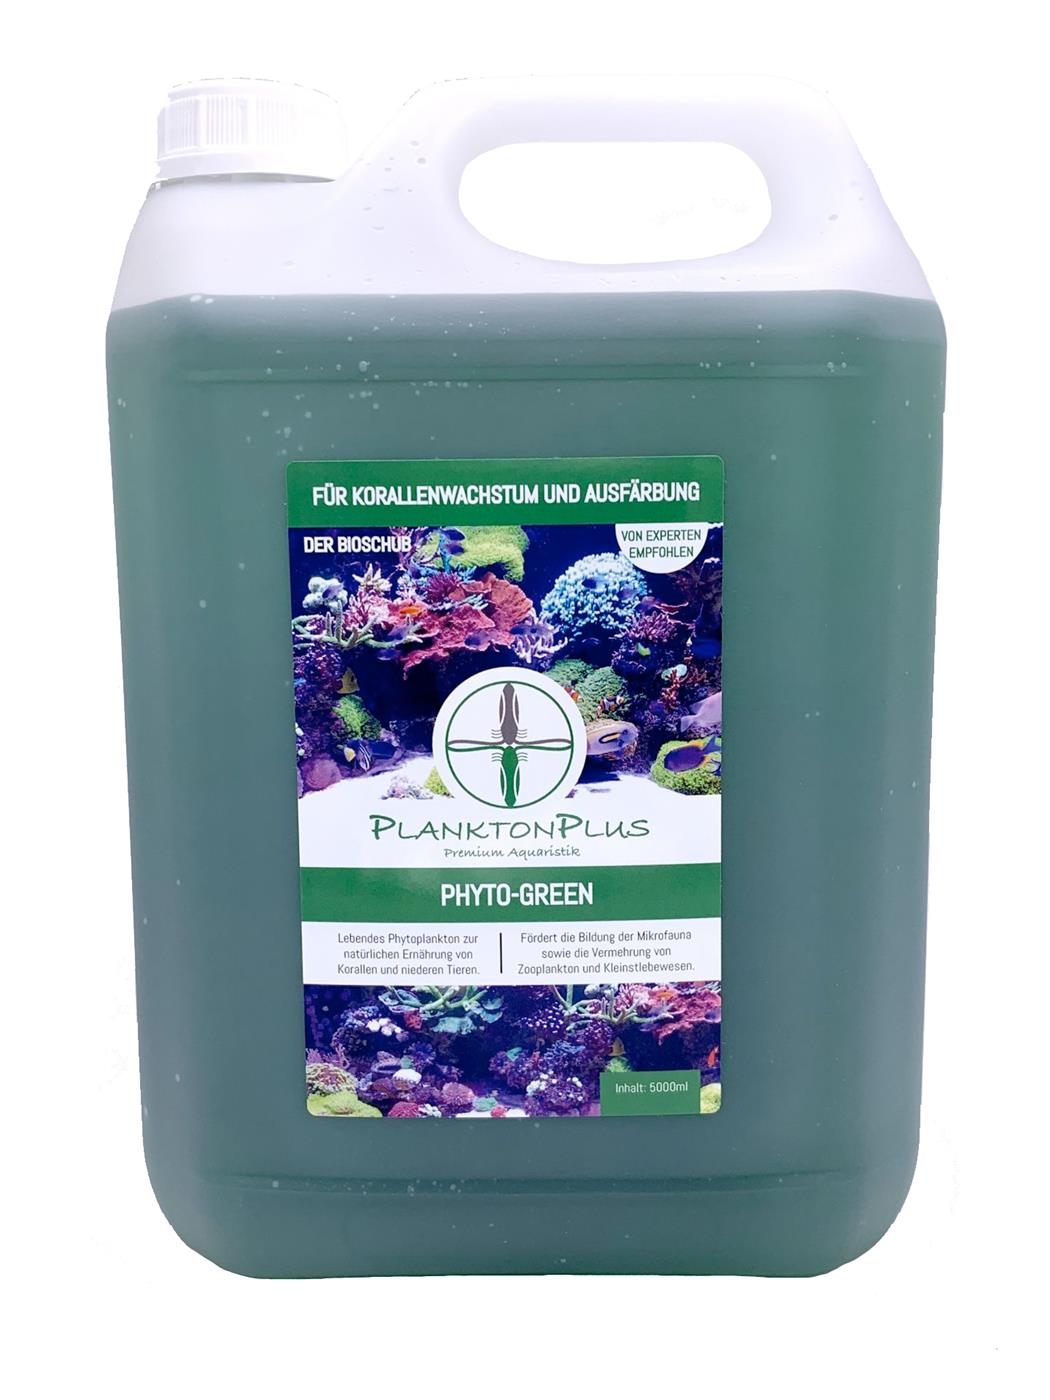 PlanktonPlus Phyto-Green für Korallenwachstum und Ausfärbung 5 Liter